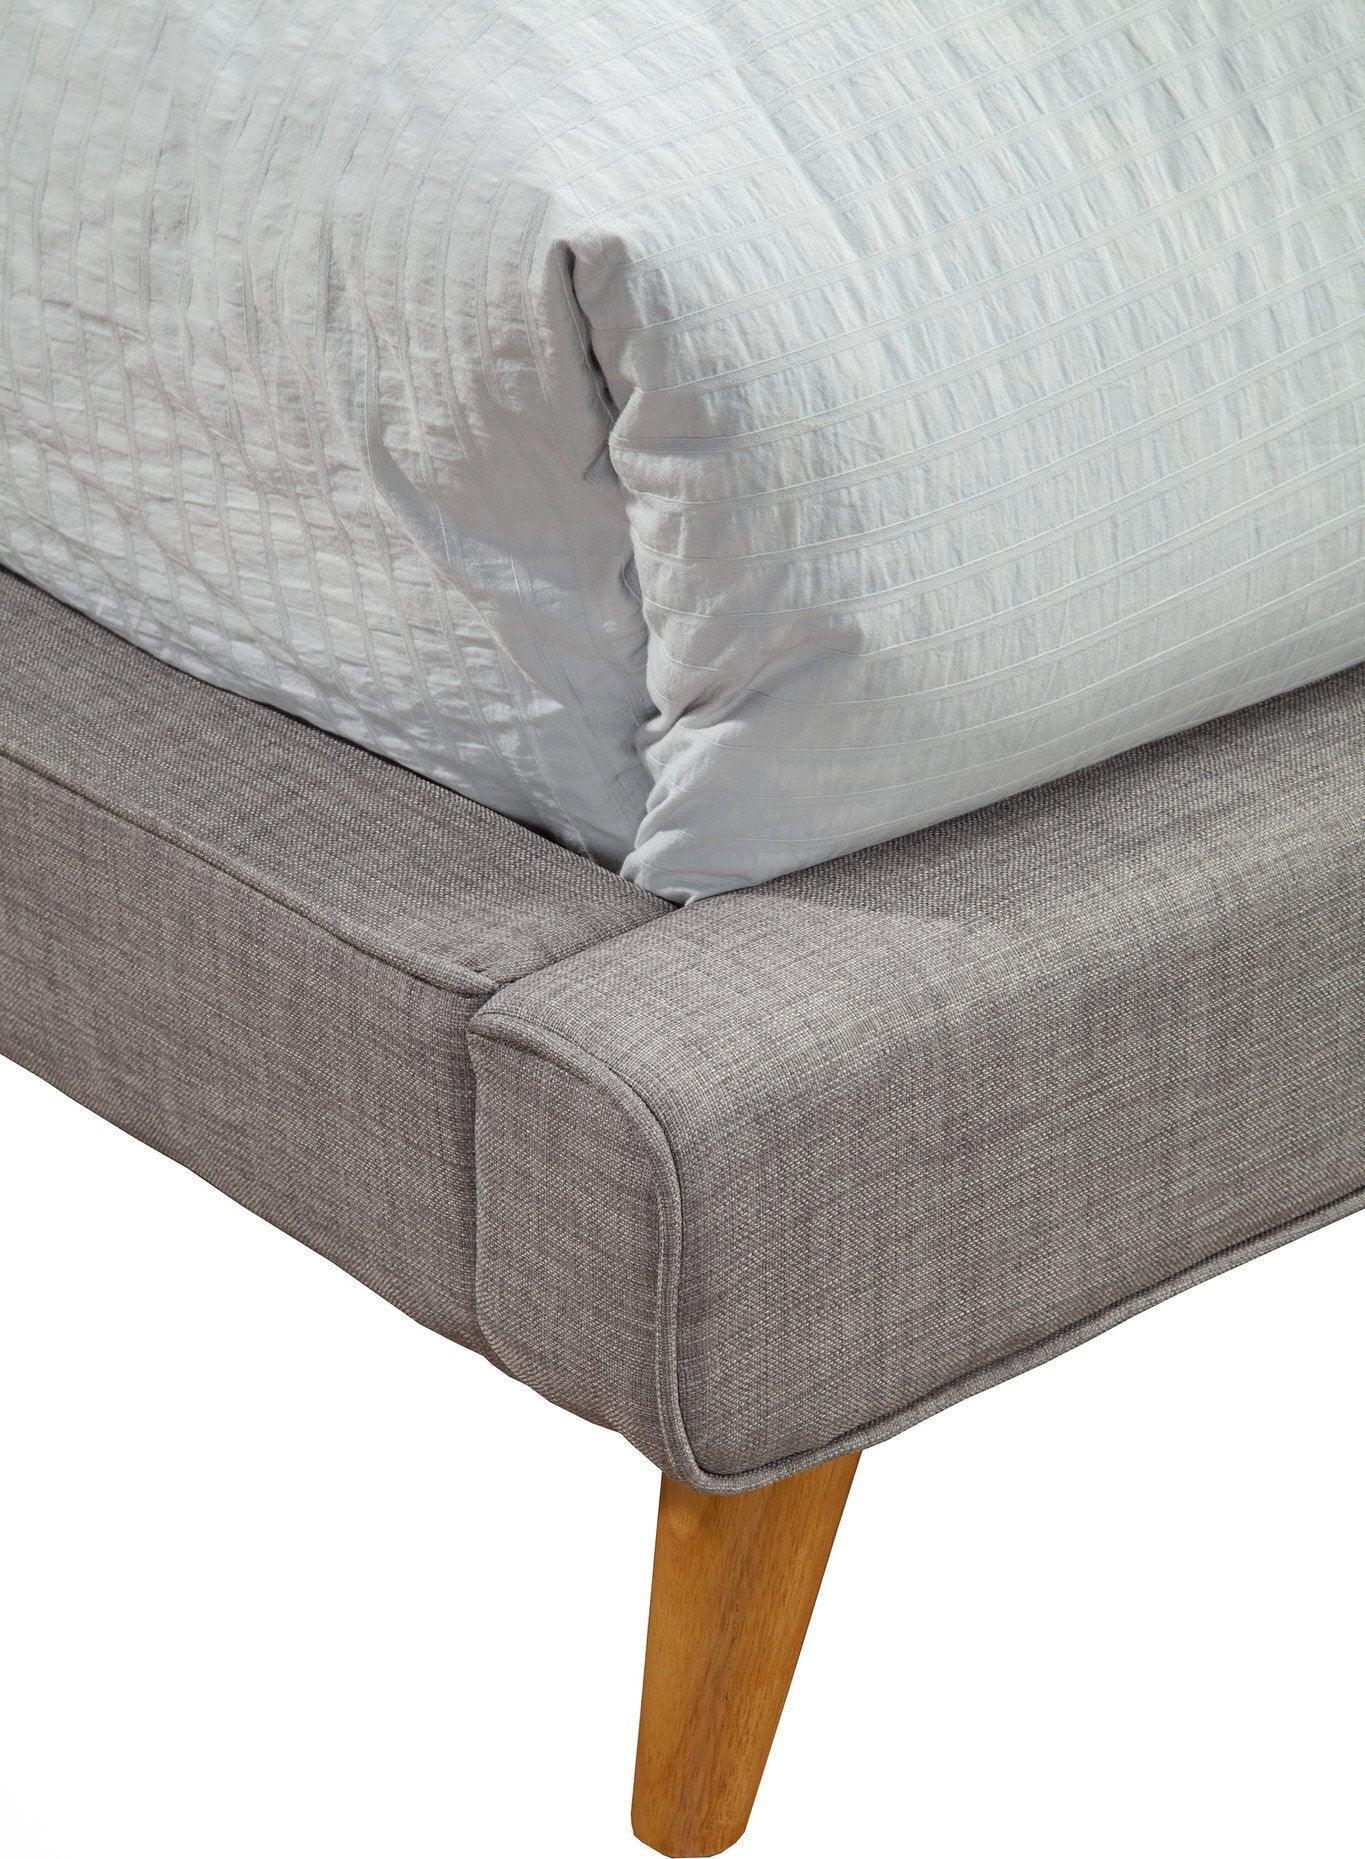 Alpine Furniture Beds - Britney California King Upholstered Platform Bed Dark Gray